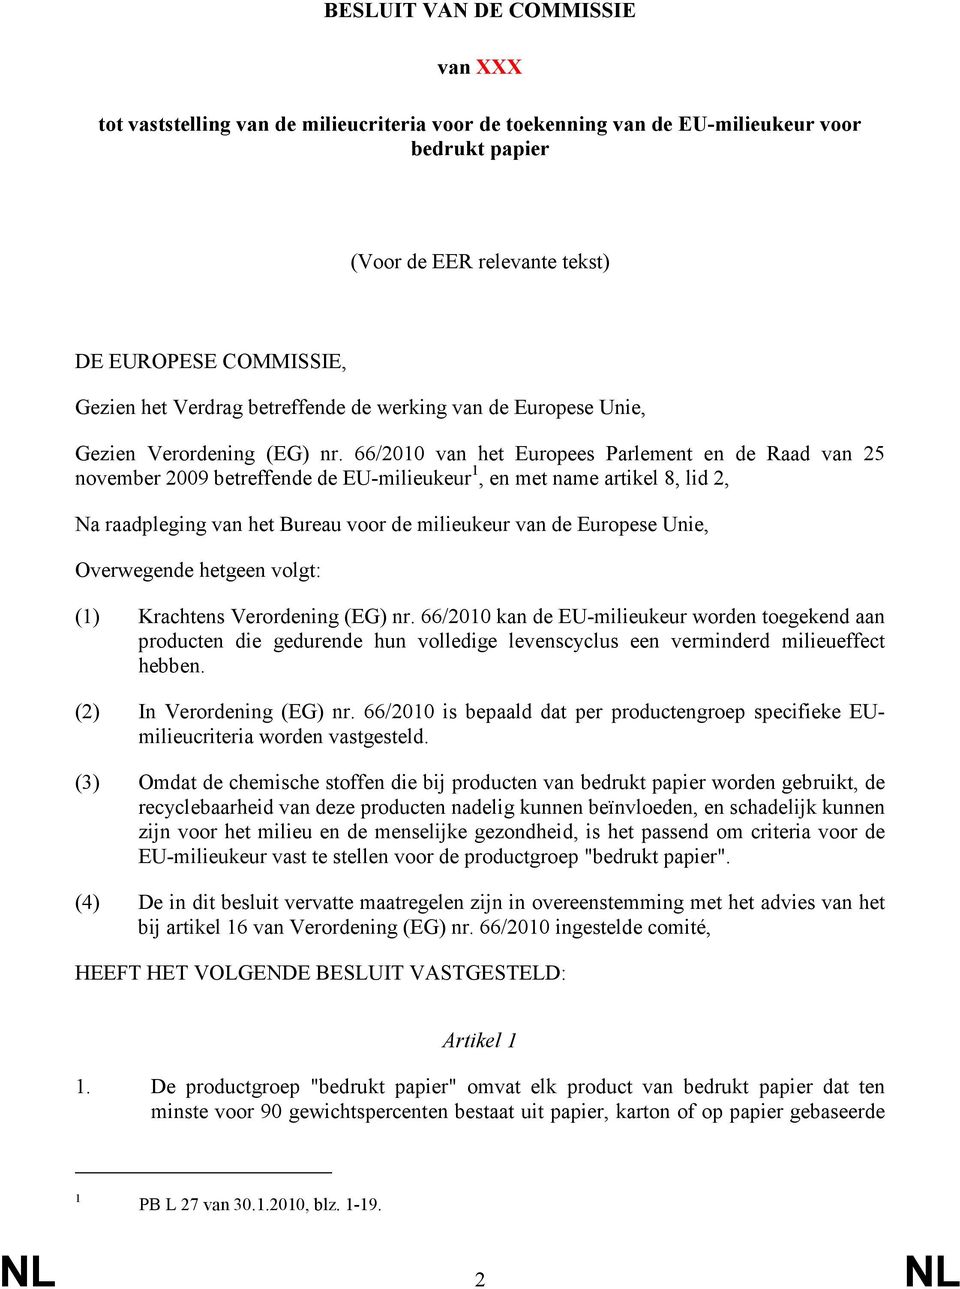 66/2010 van het Europees Parlement en de Raad van 25 november 2009 betreffende de EU-milieukeur 1, en met name artikel 8, lid 2, Na raadpleging van het Bureau voor de milieukeur van de Europese Unie,